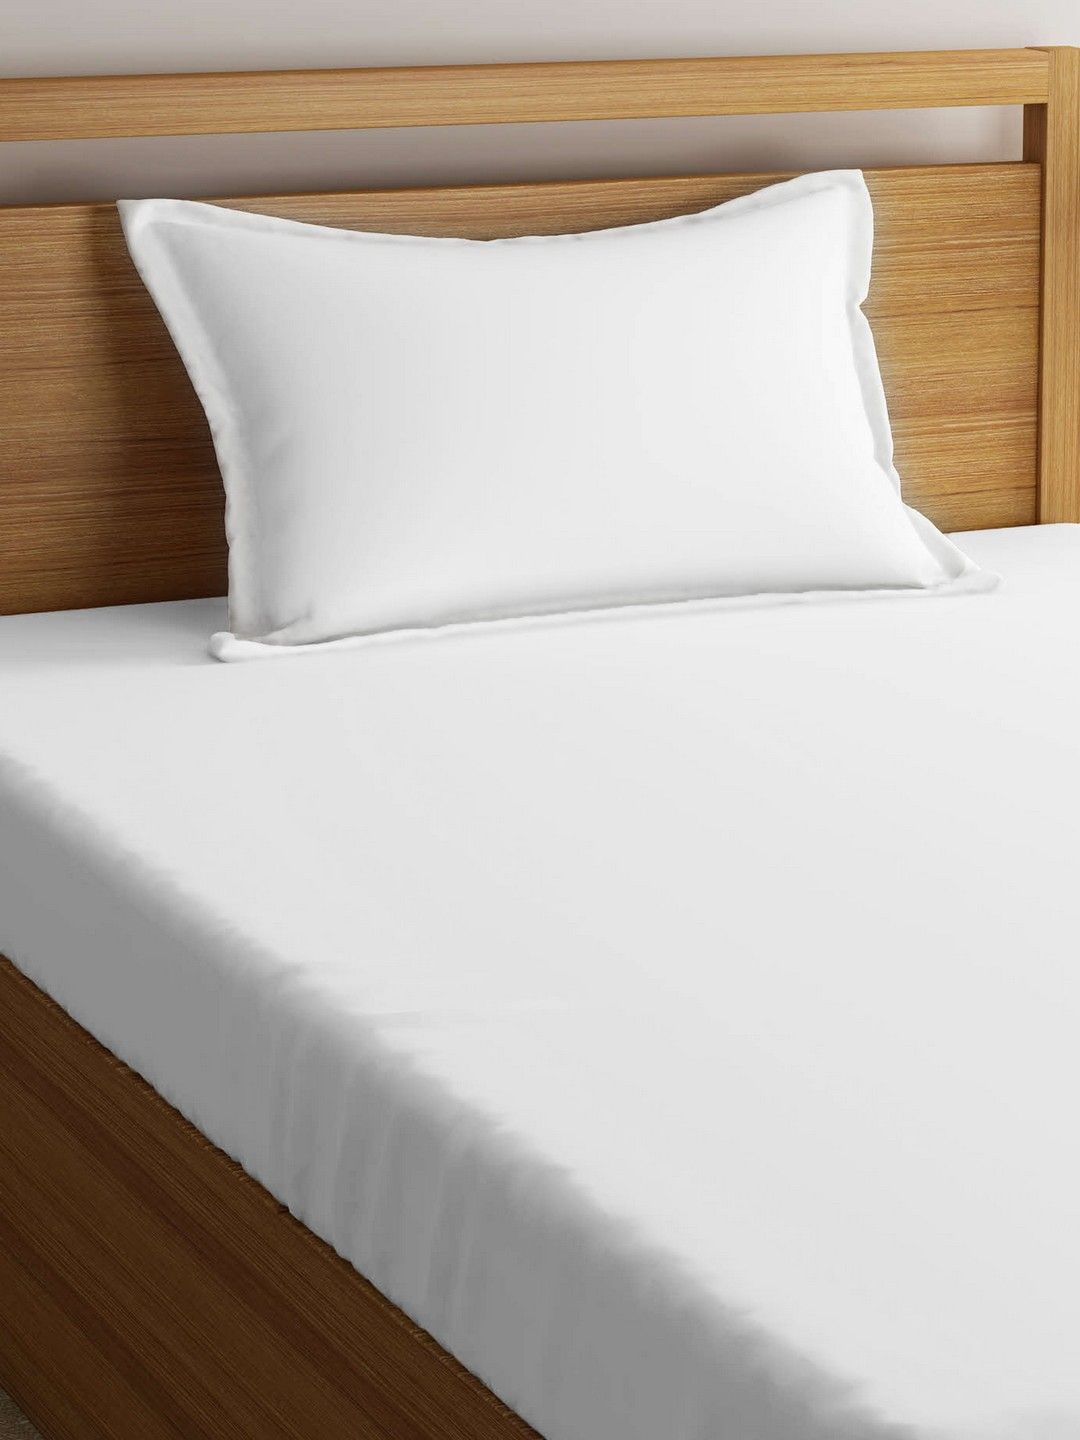 ROMEE White Fibre Sleep Pillow Price in India